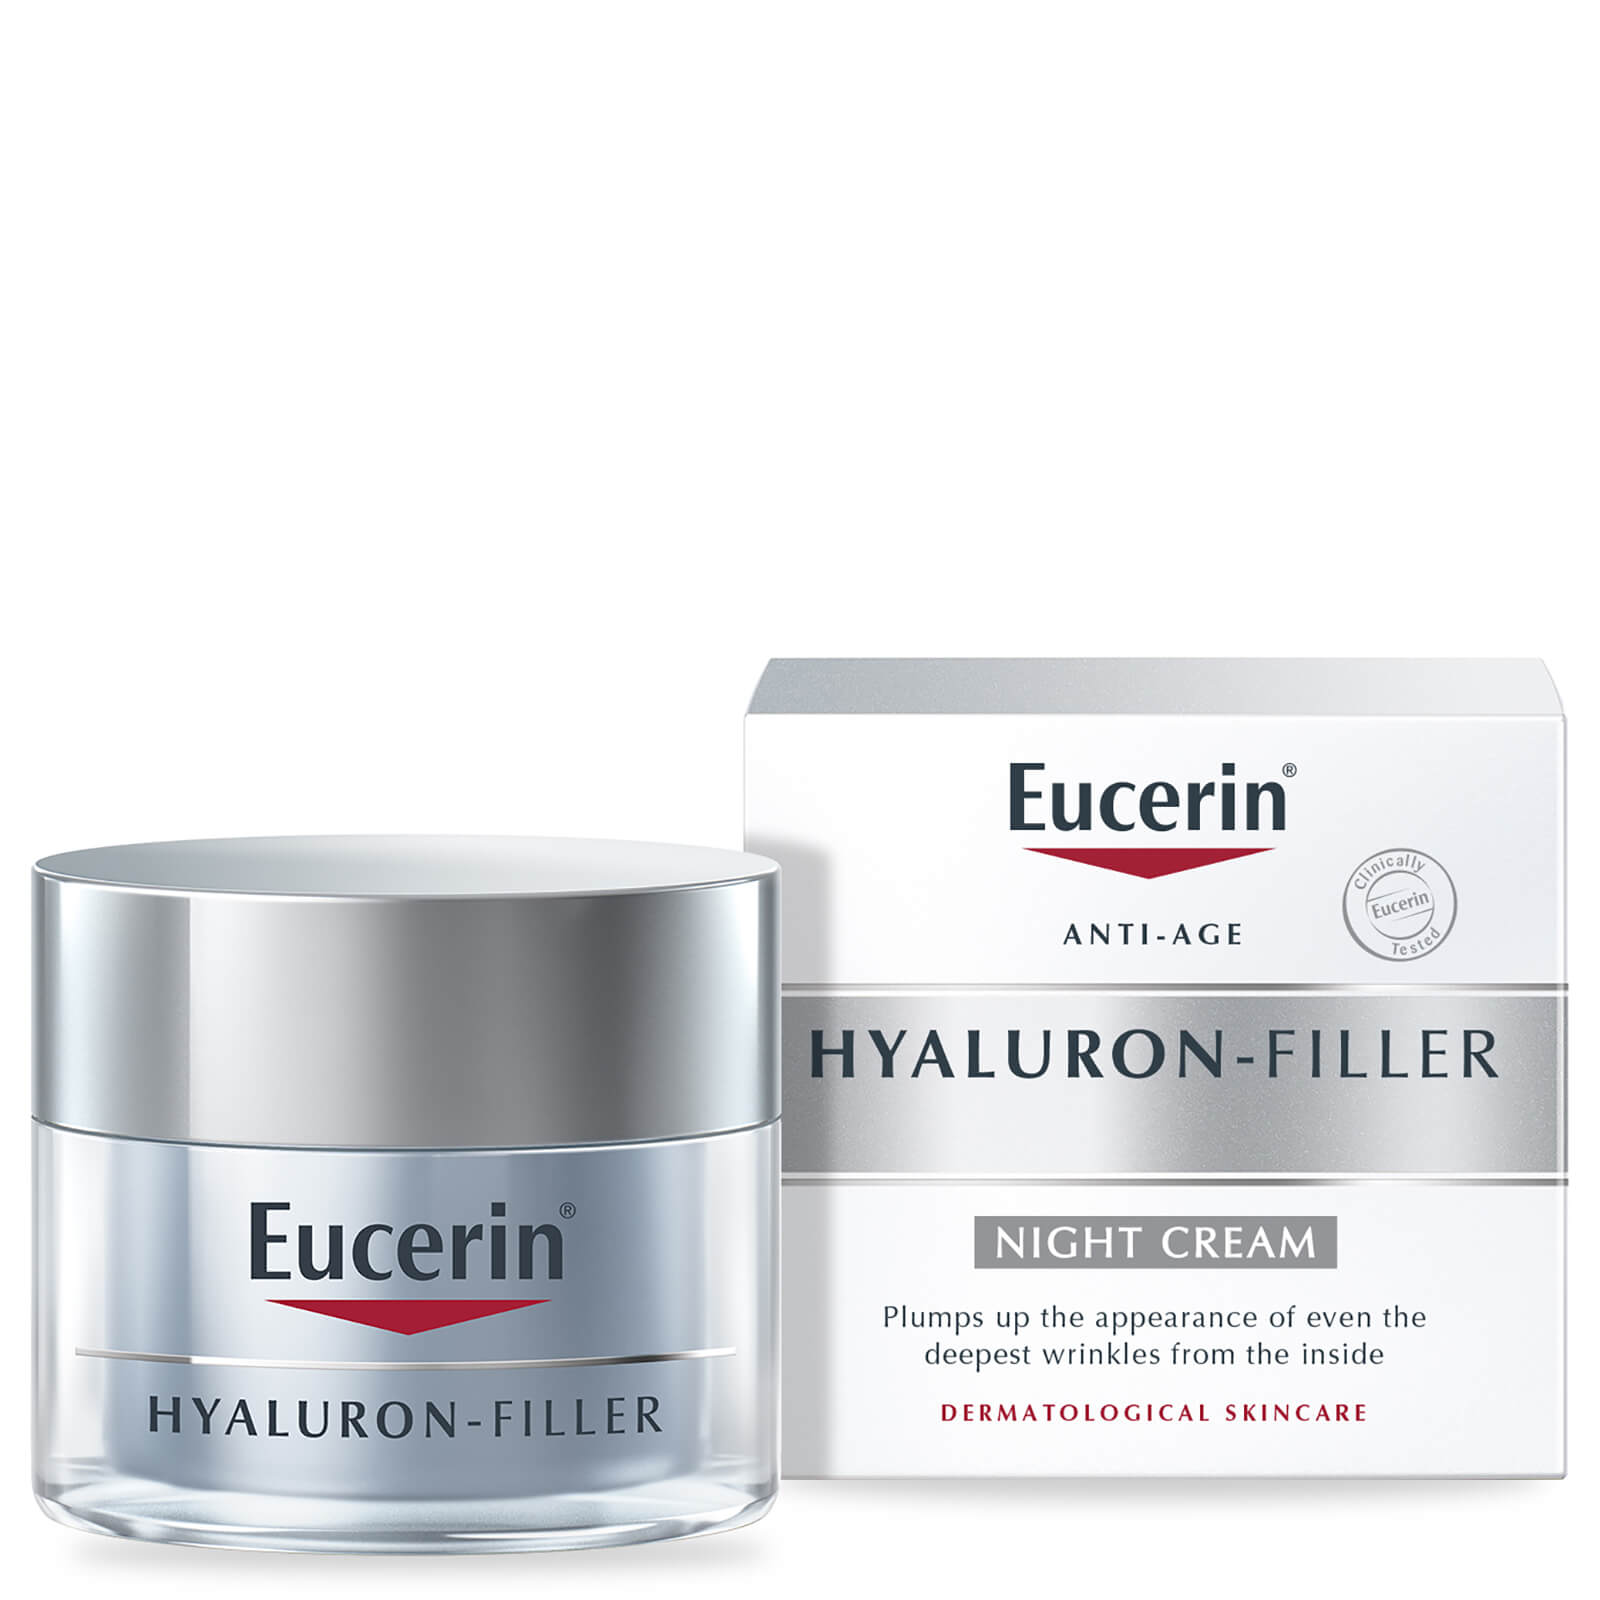 Eucerin HYALURON-FILLER Wrinkle Filling Treatment Night Cream